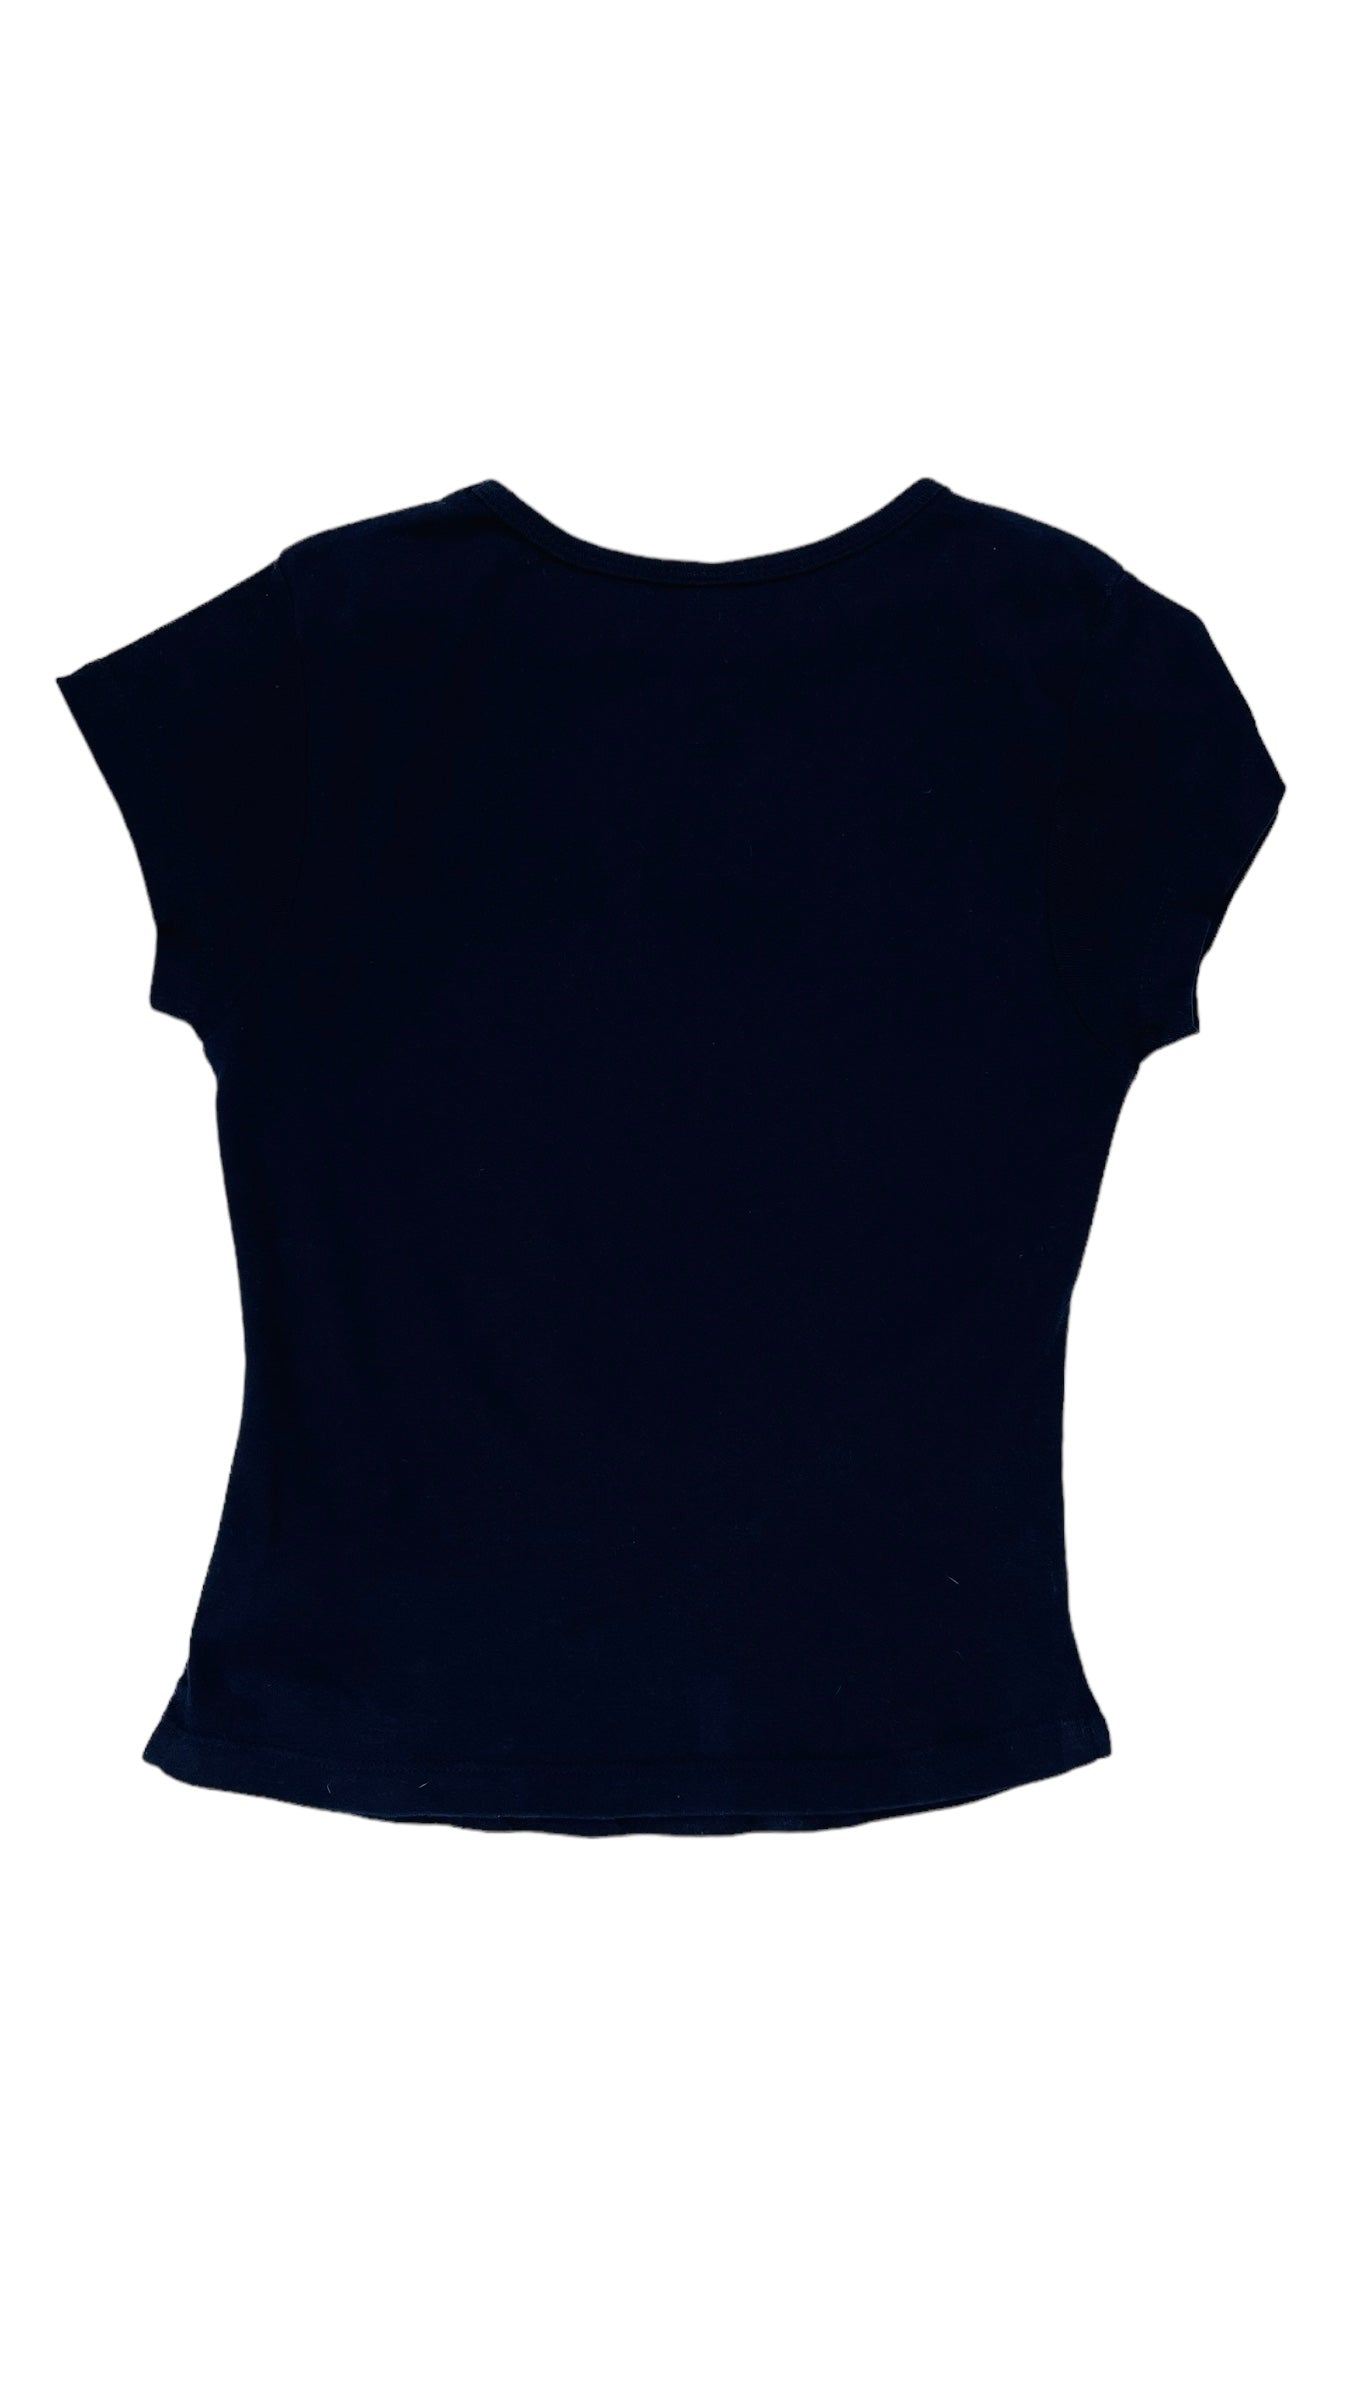 Vintage 90s blue black Palm Springs souvenier t shirt - Size L